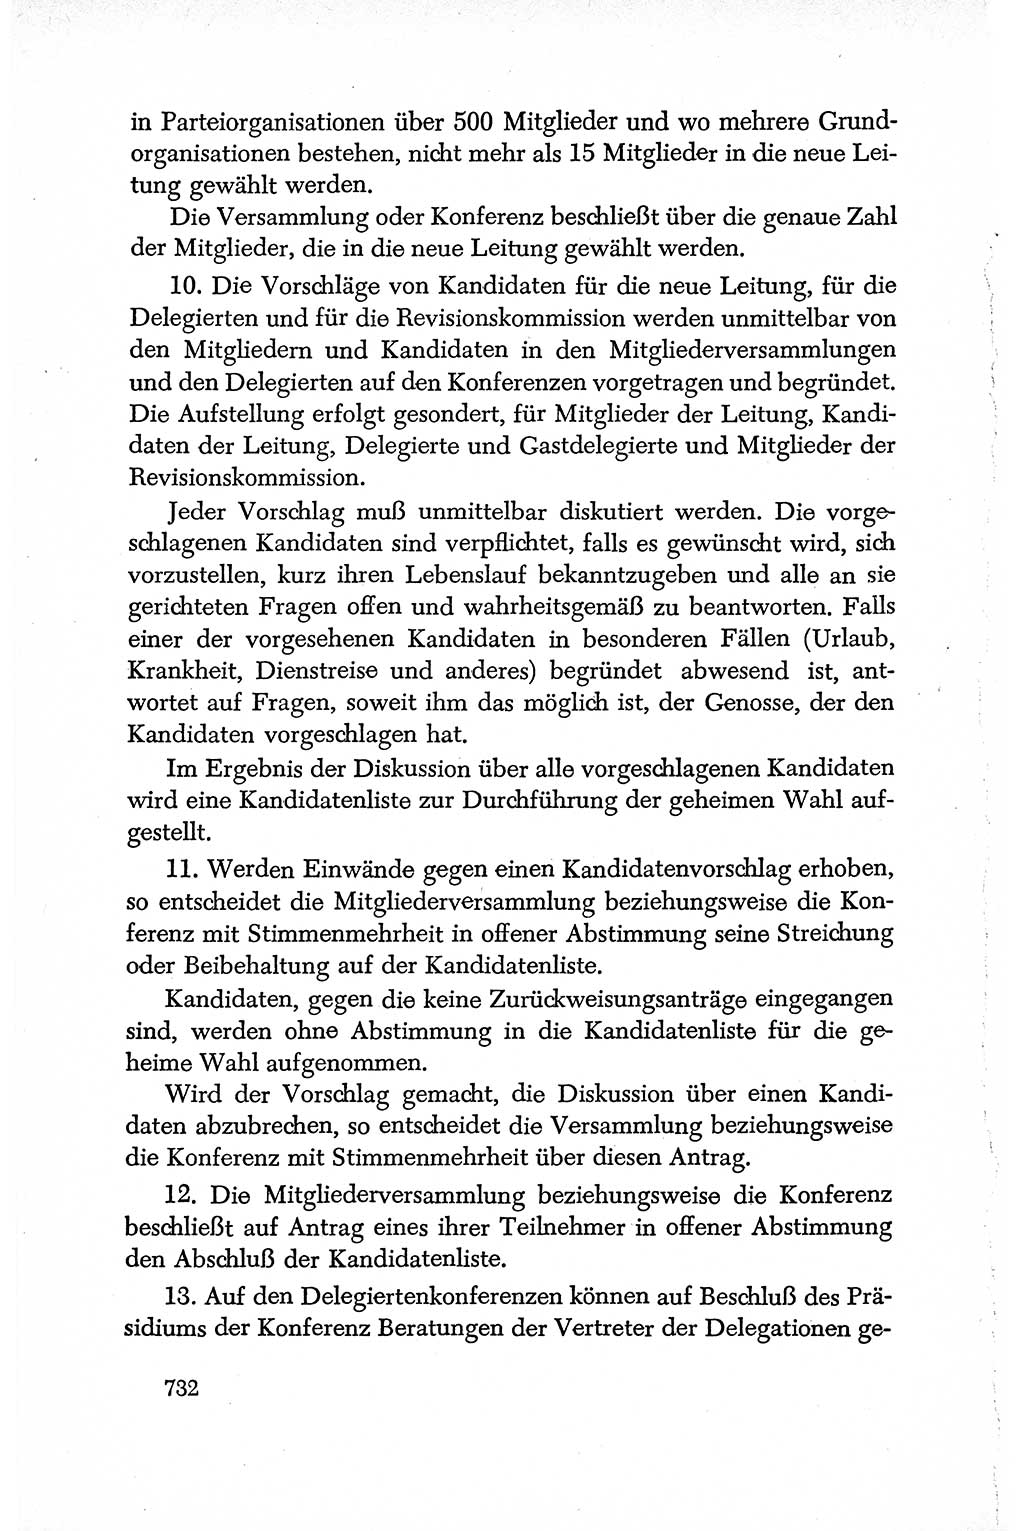 Dokumente der Sozialistischen Einheitspartei Deutschlands (SED) [Deutsche Demokratische Republik (DDR)] 1950-1952, Seite 732 (Dok. SED DDR 1950-1952, S. 732)